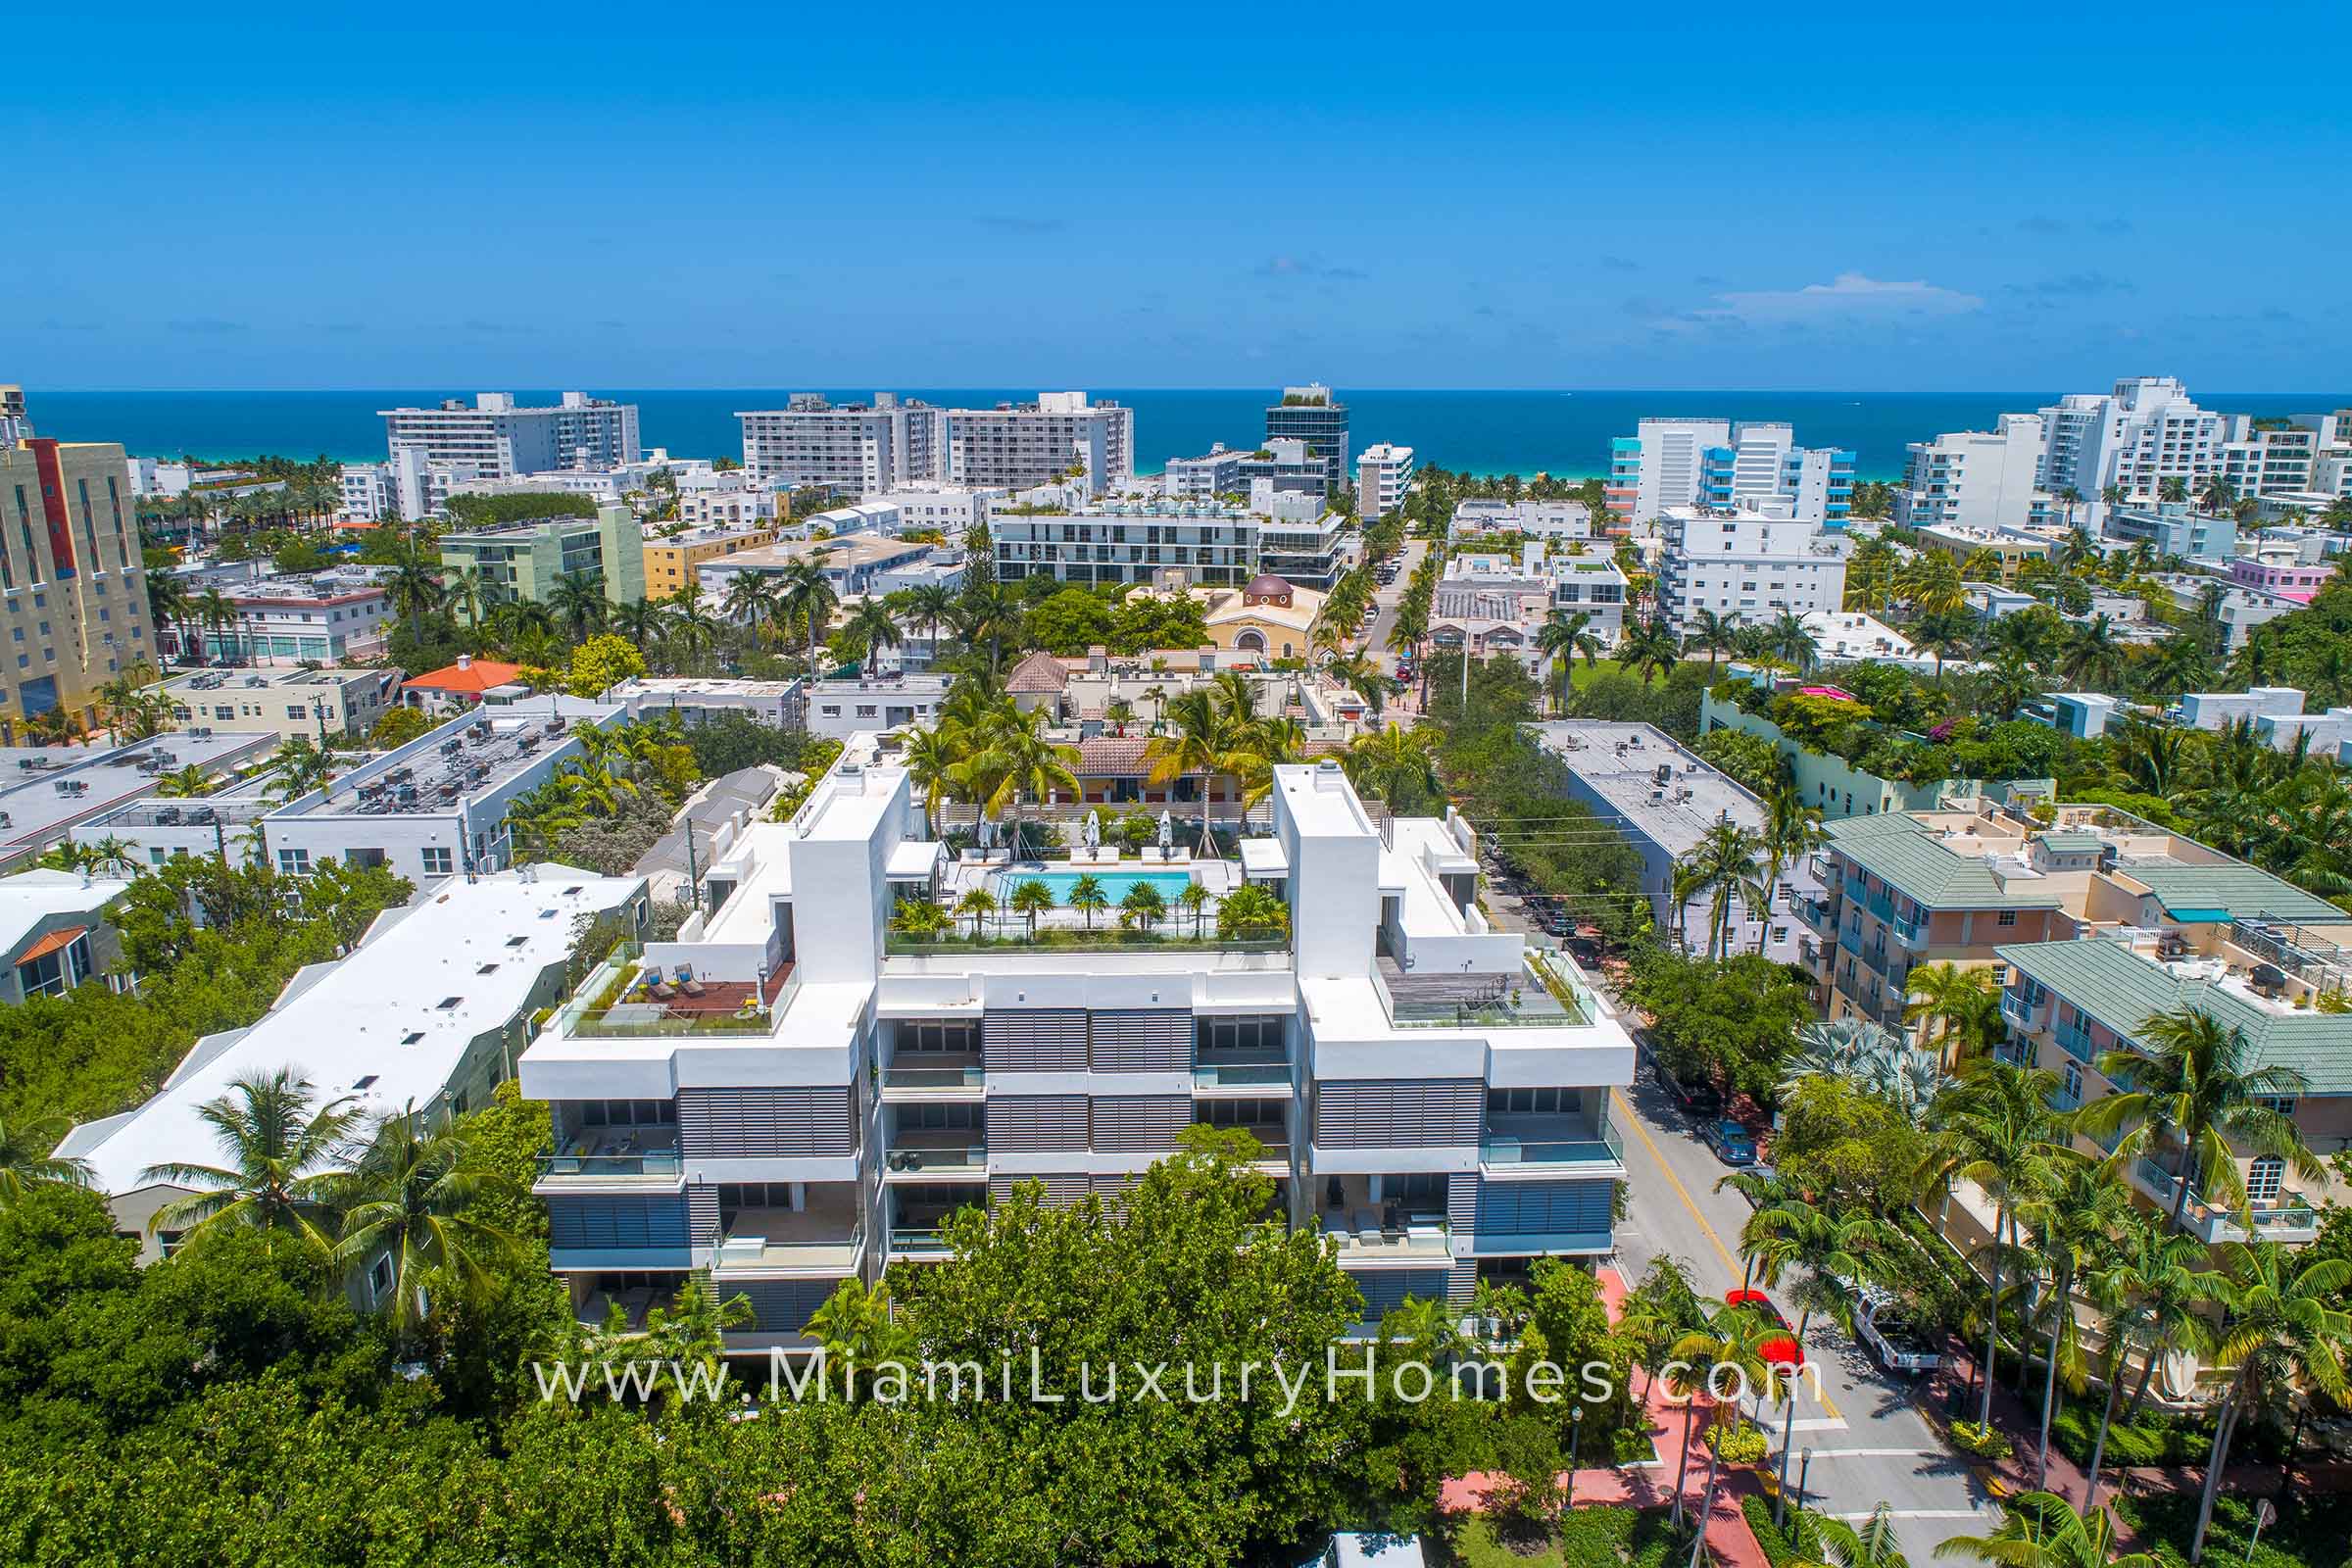 Louver House Condos in South Beach